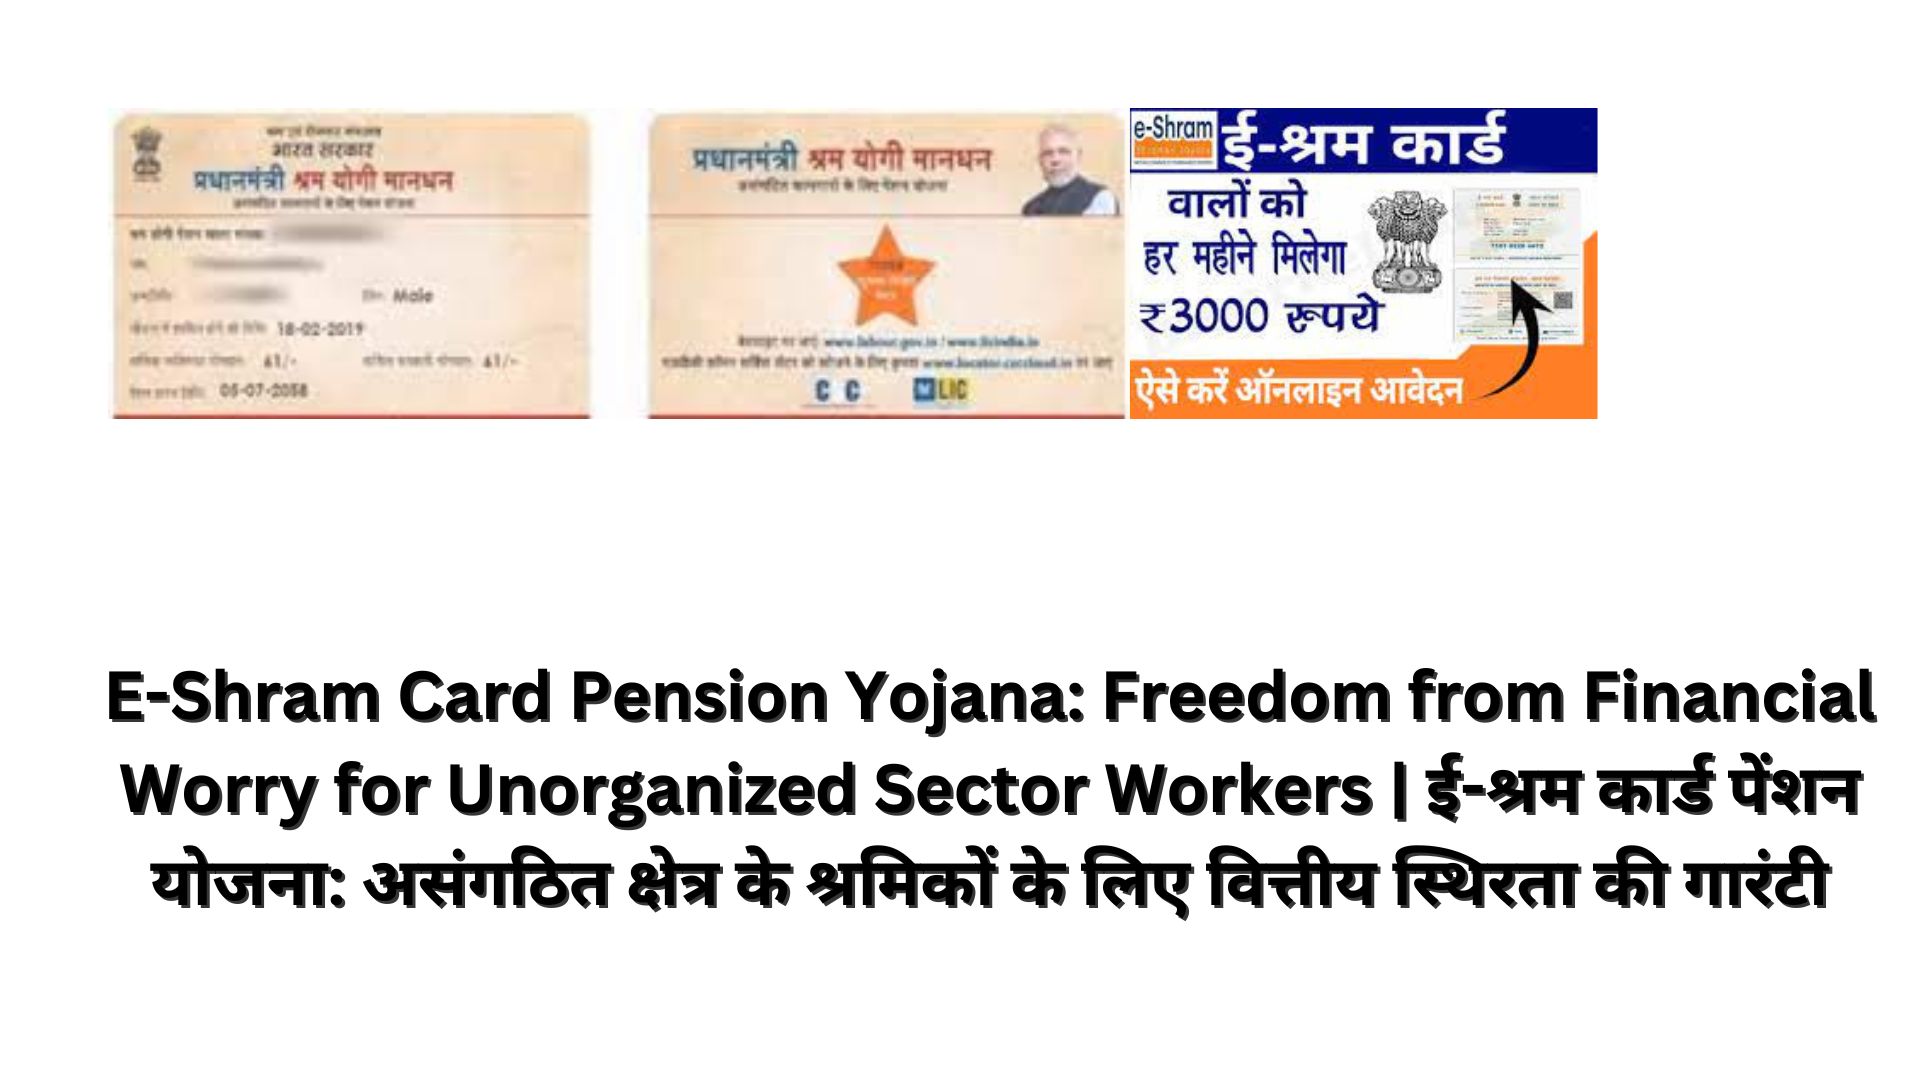 E-Shram Card Pension Yojana: Freedom from Financial Worry for Unorganized Sector Workers | ई-श्रम कार्ड पेंशन योजना: असंगठित क्षेत्र के श्रमिकों के लिए वित्तीय स्थिरता की गारंटी